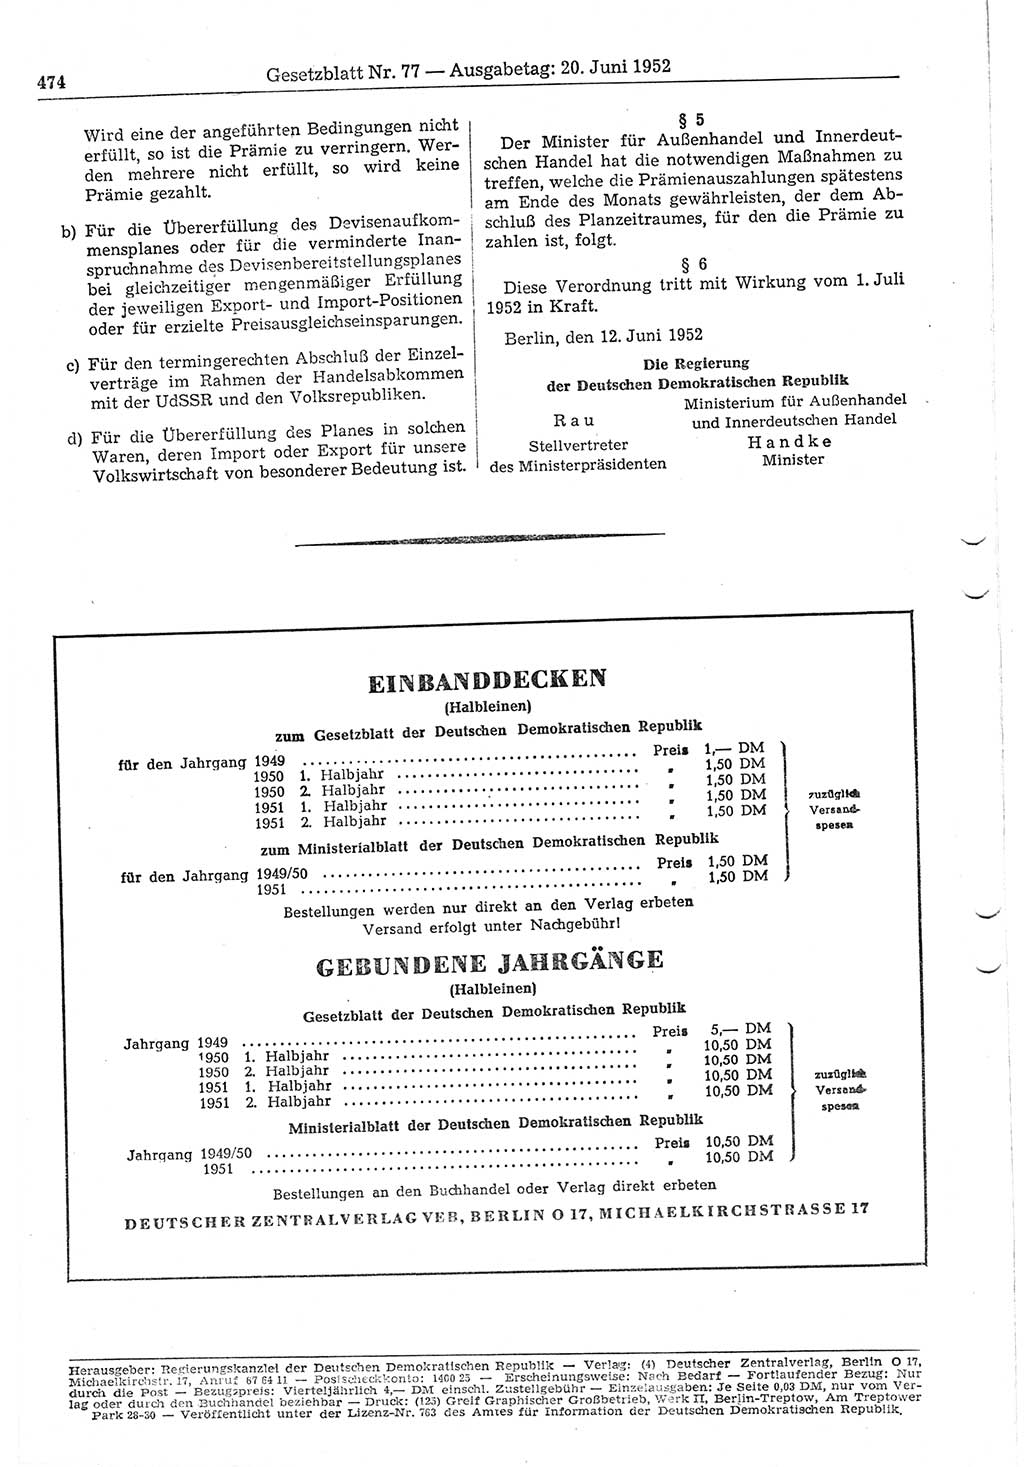 Gesetzblatt (GBl.) der Deutschen Demokratischen Republik (DDR) 1952, Seite 474 (GBl. DDR 1952, S. 474)